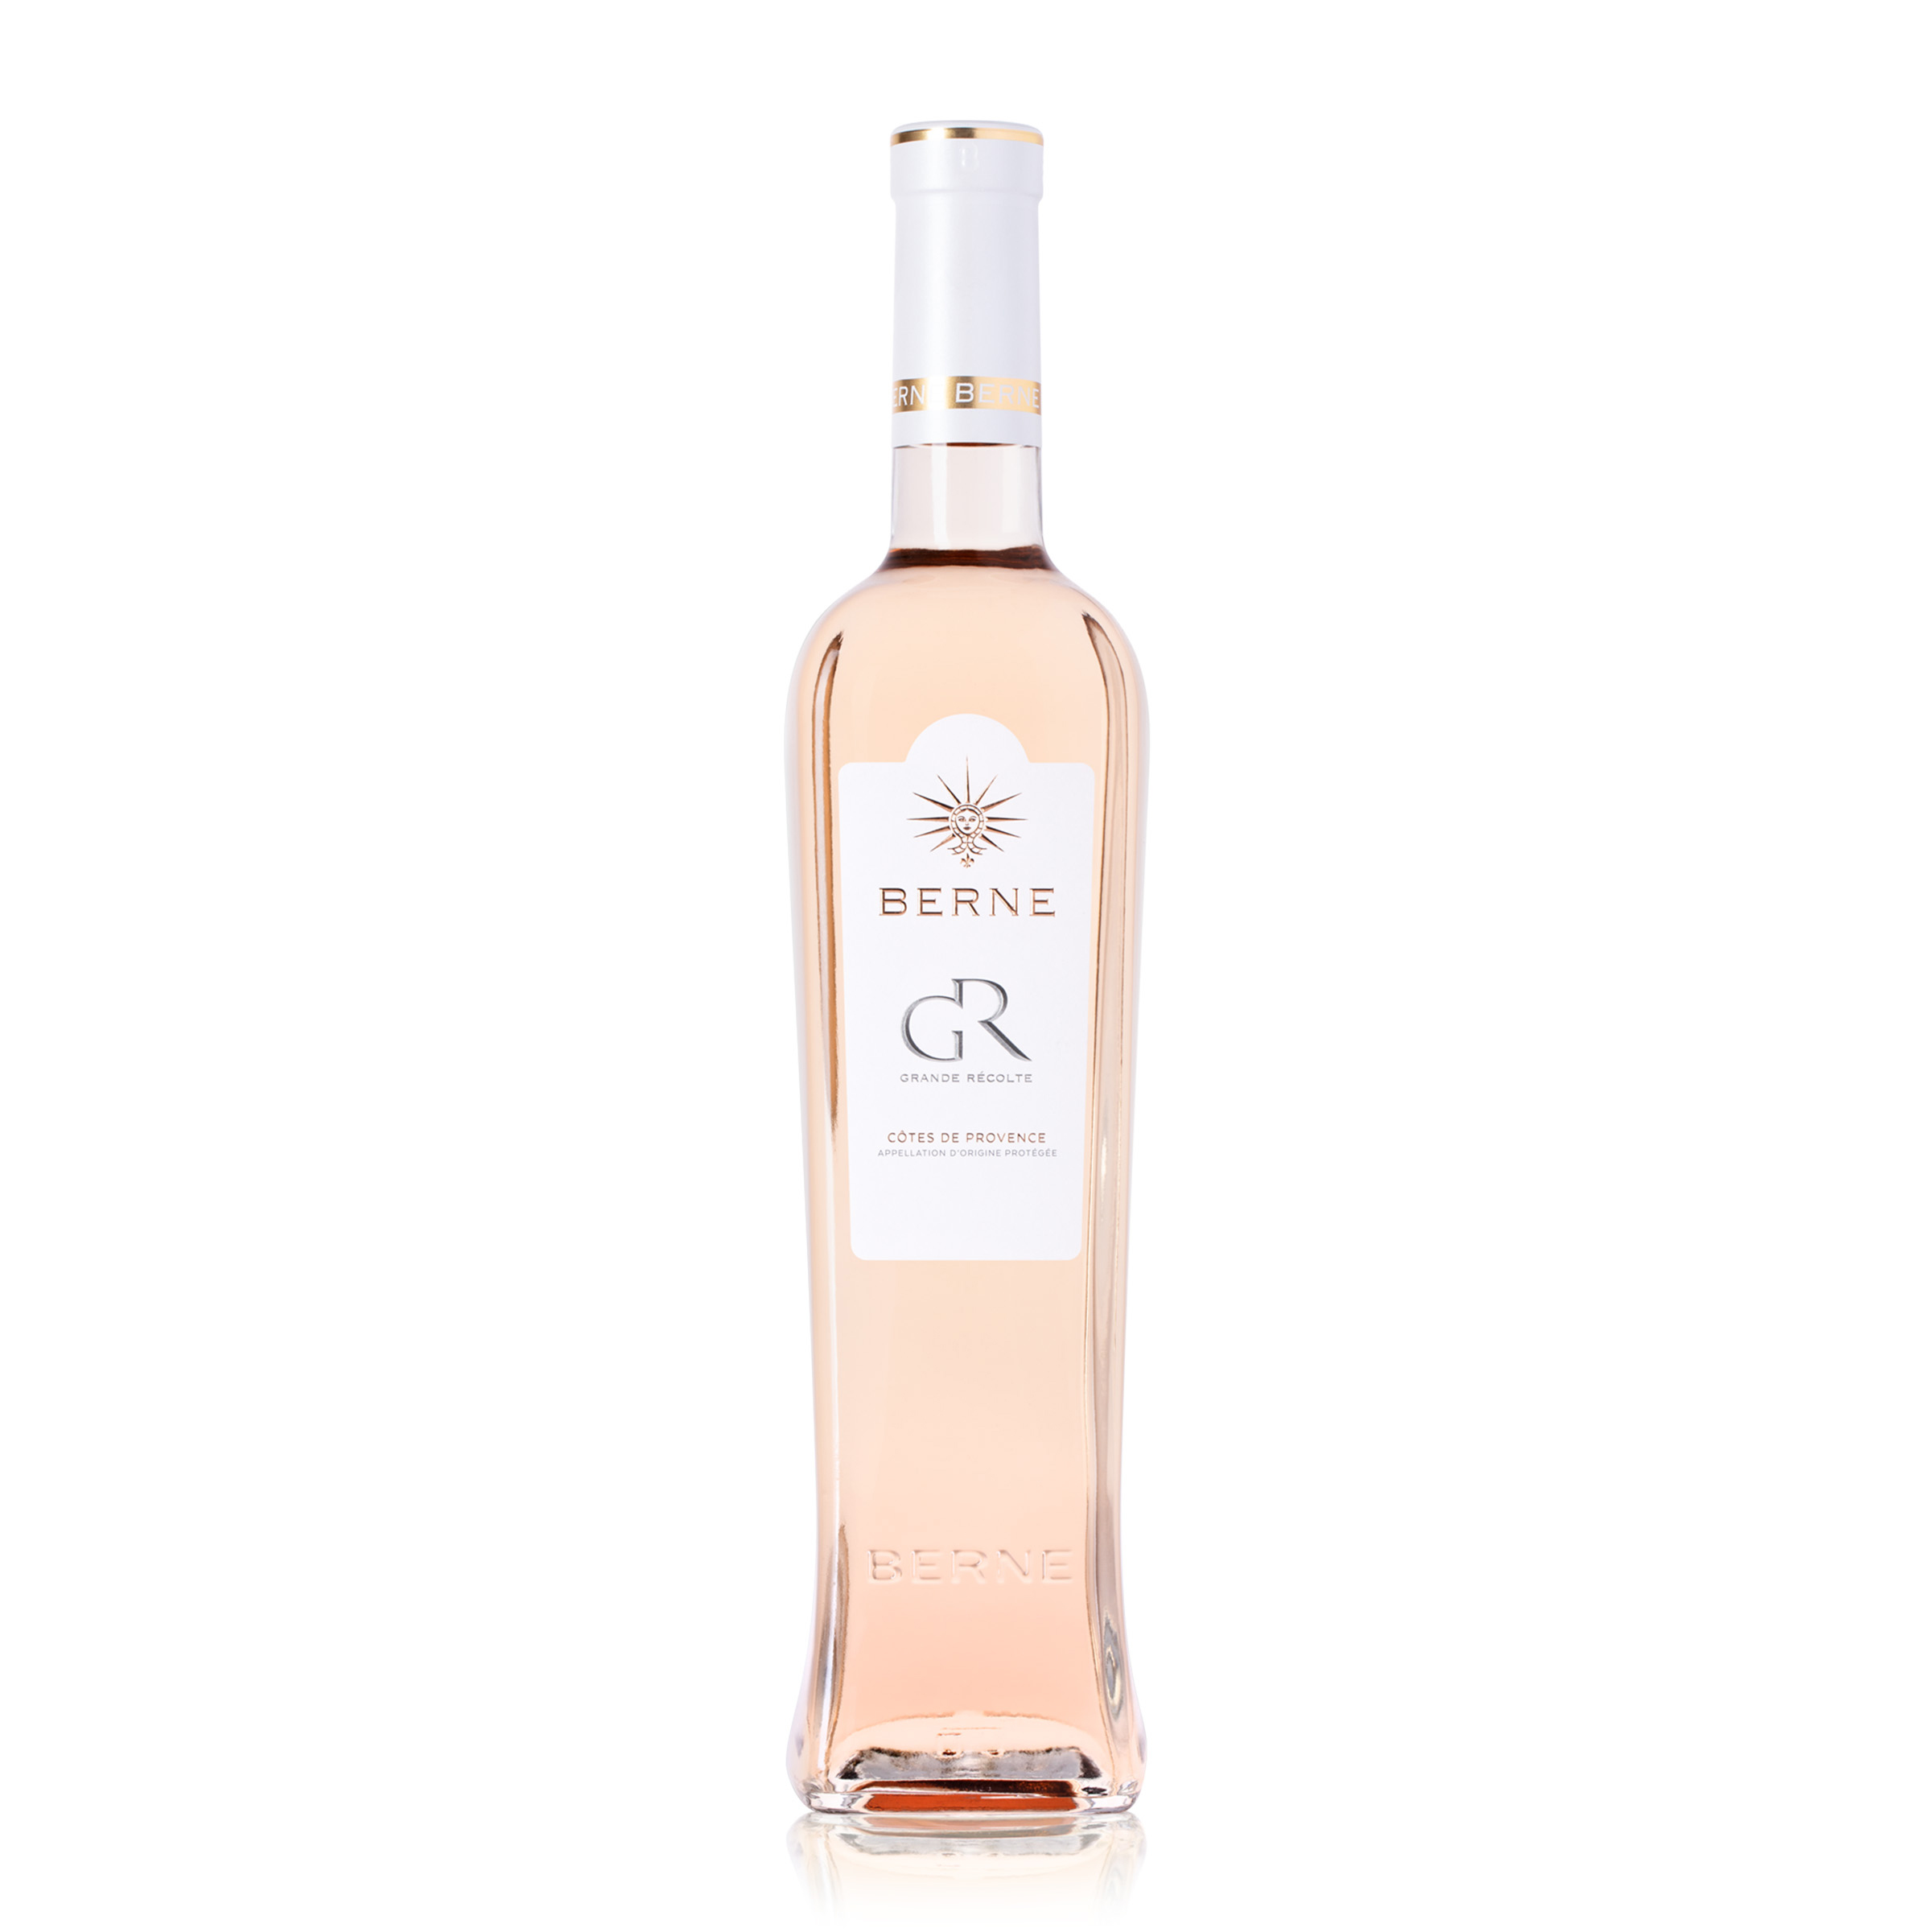 Comment bien servir un vin rosé ? – Château de Berne